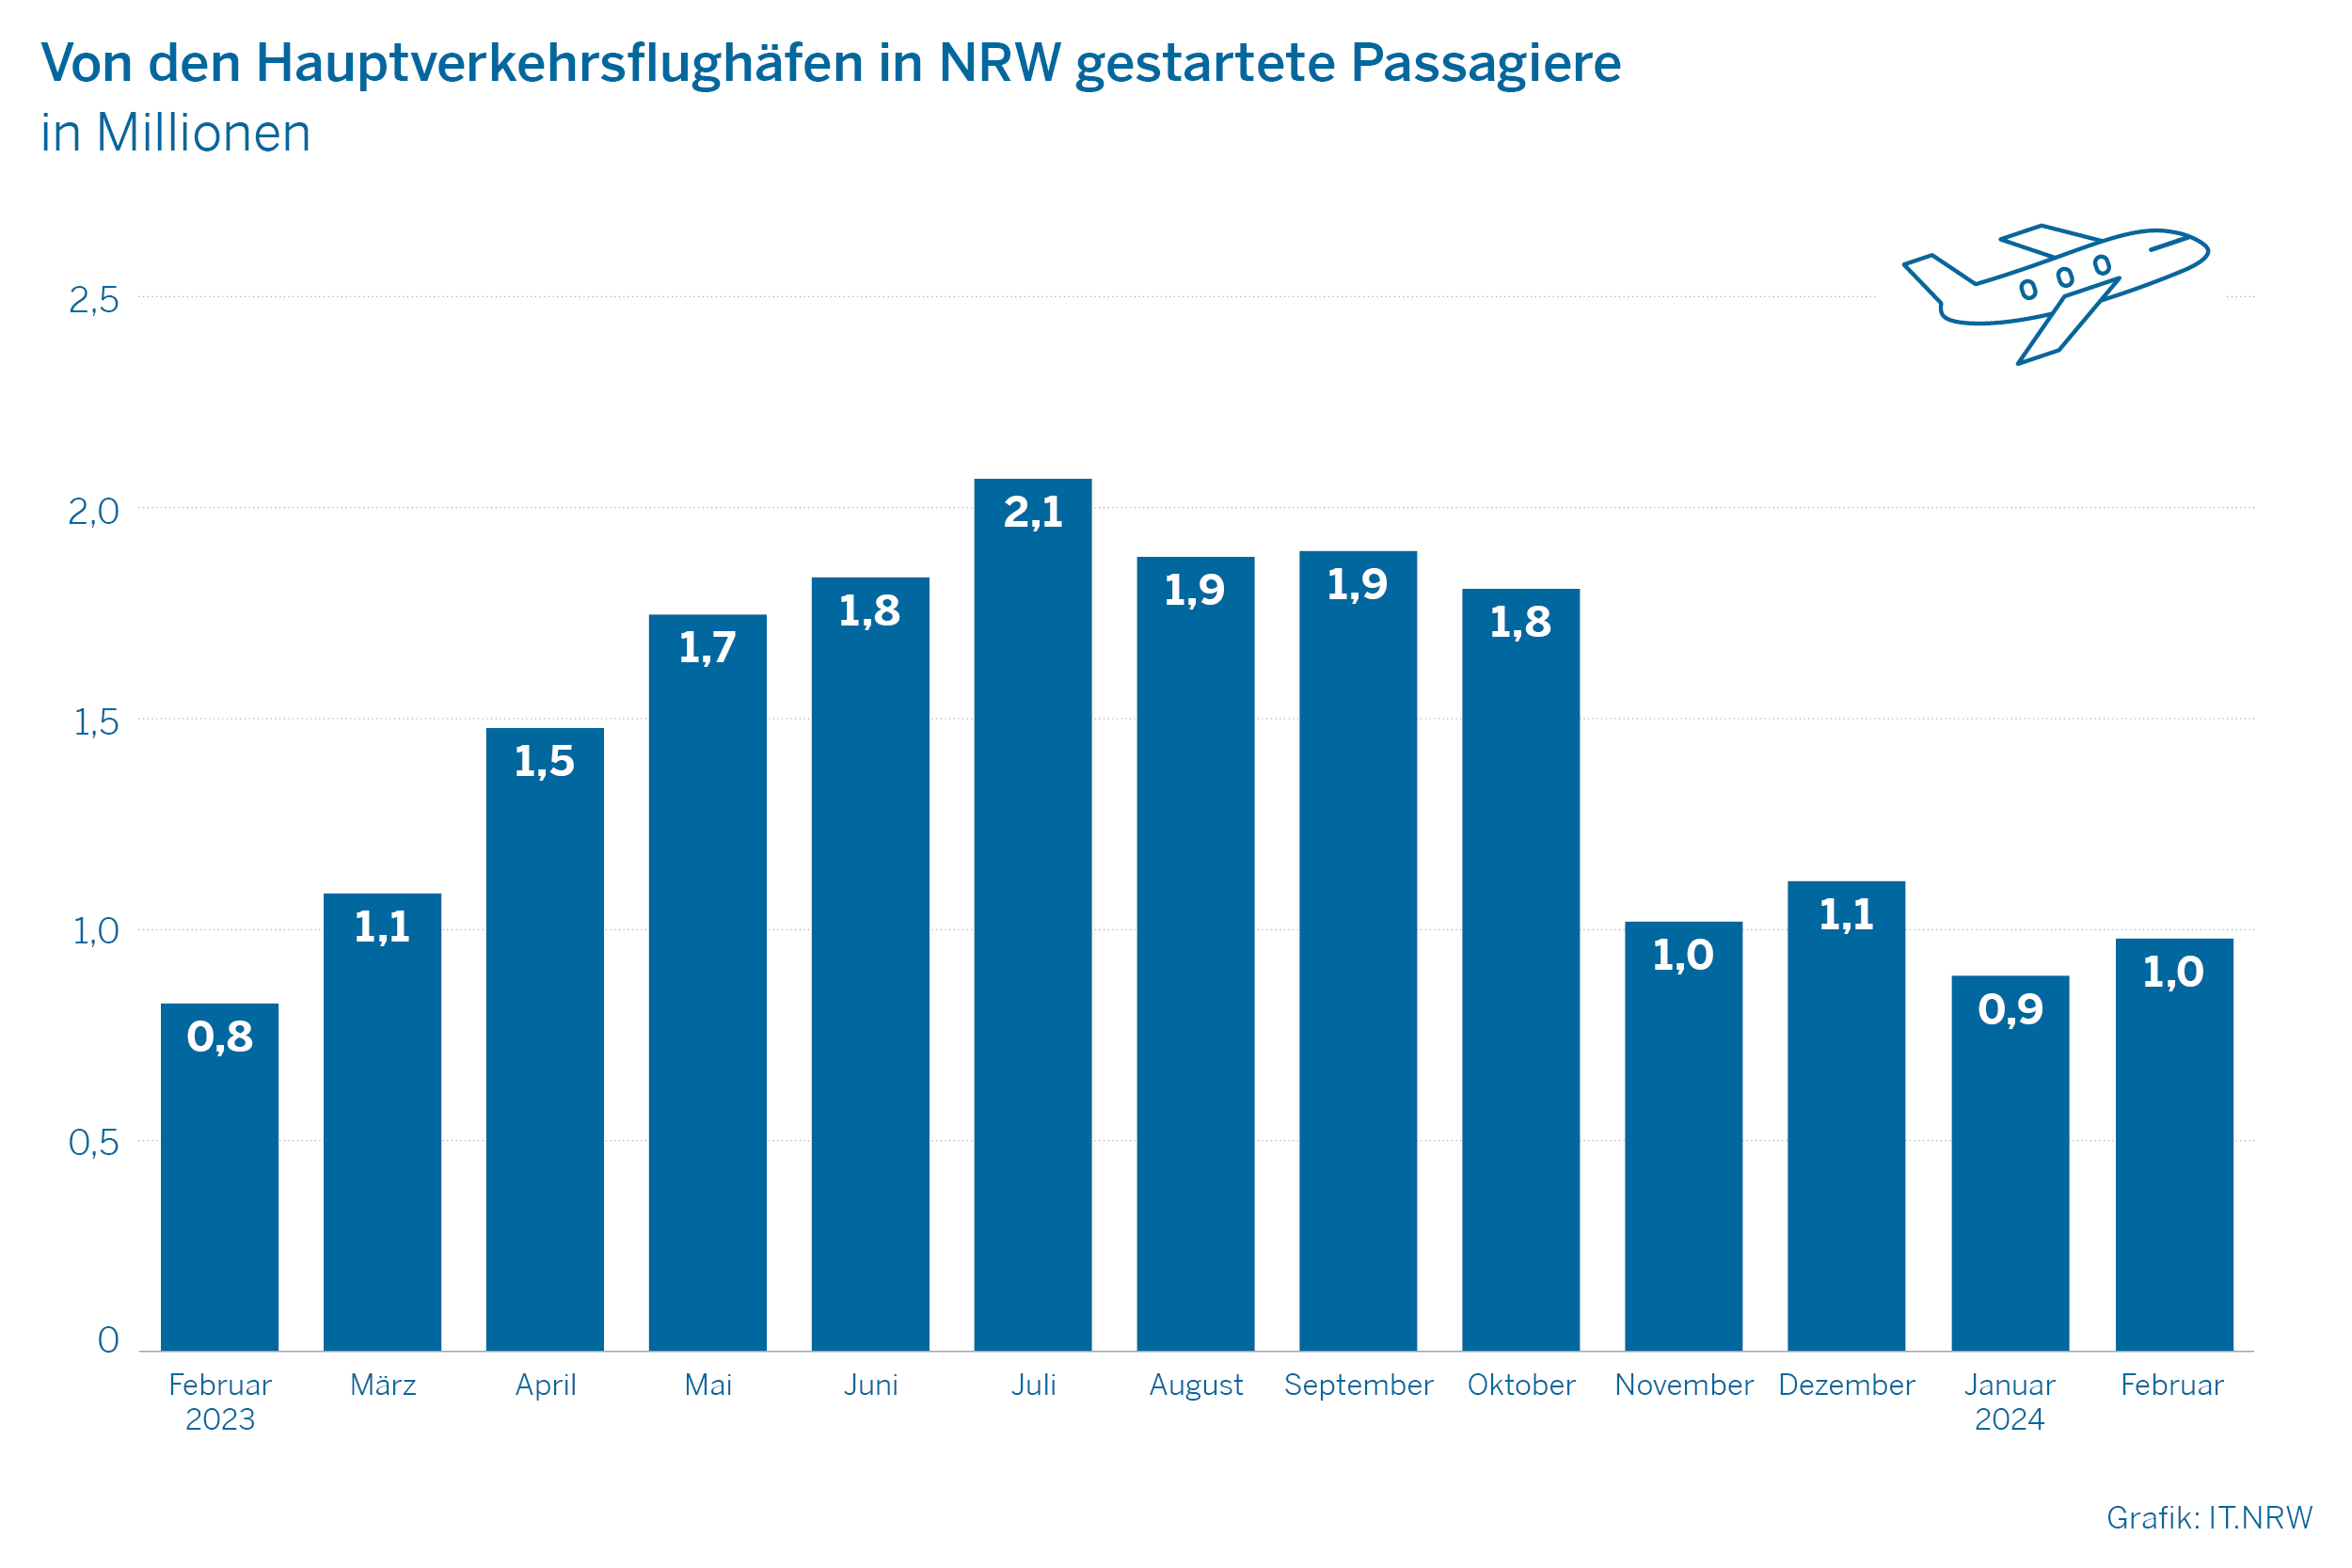 Von den Hauptflughäfen in NRW gestartete Passagiere